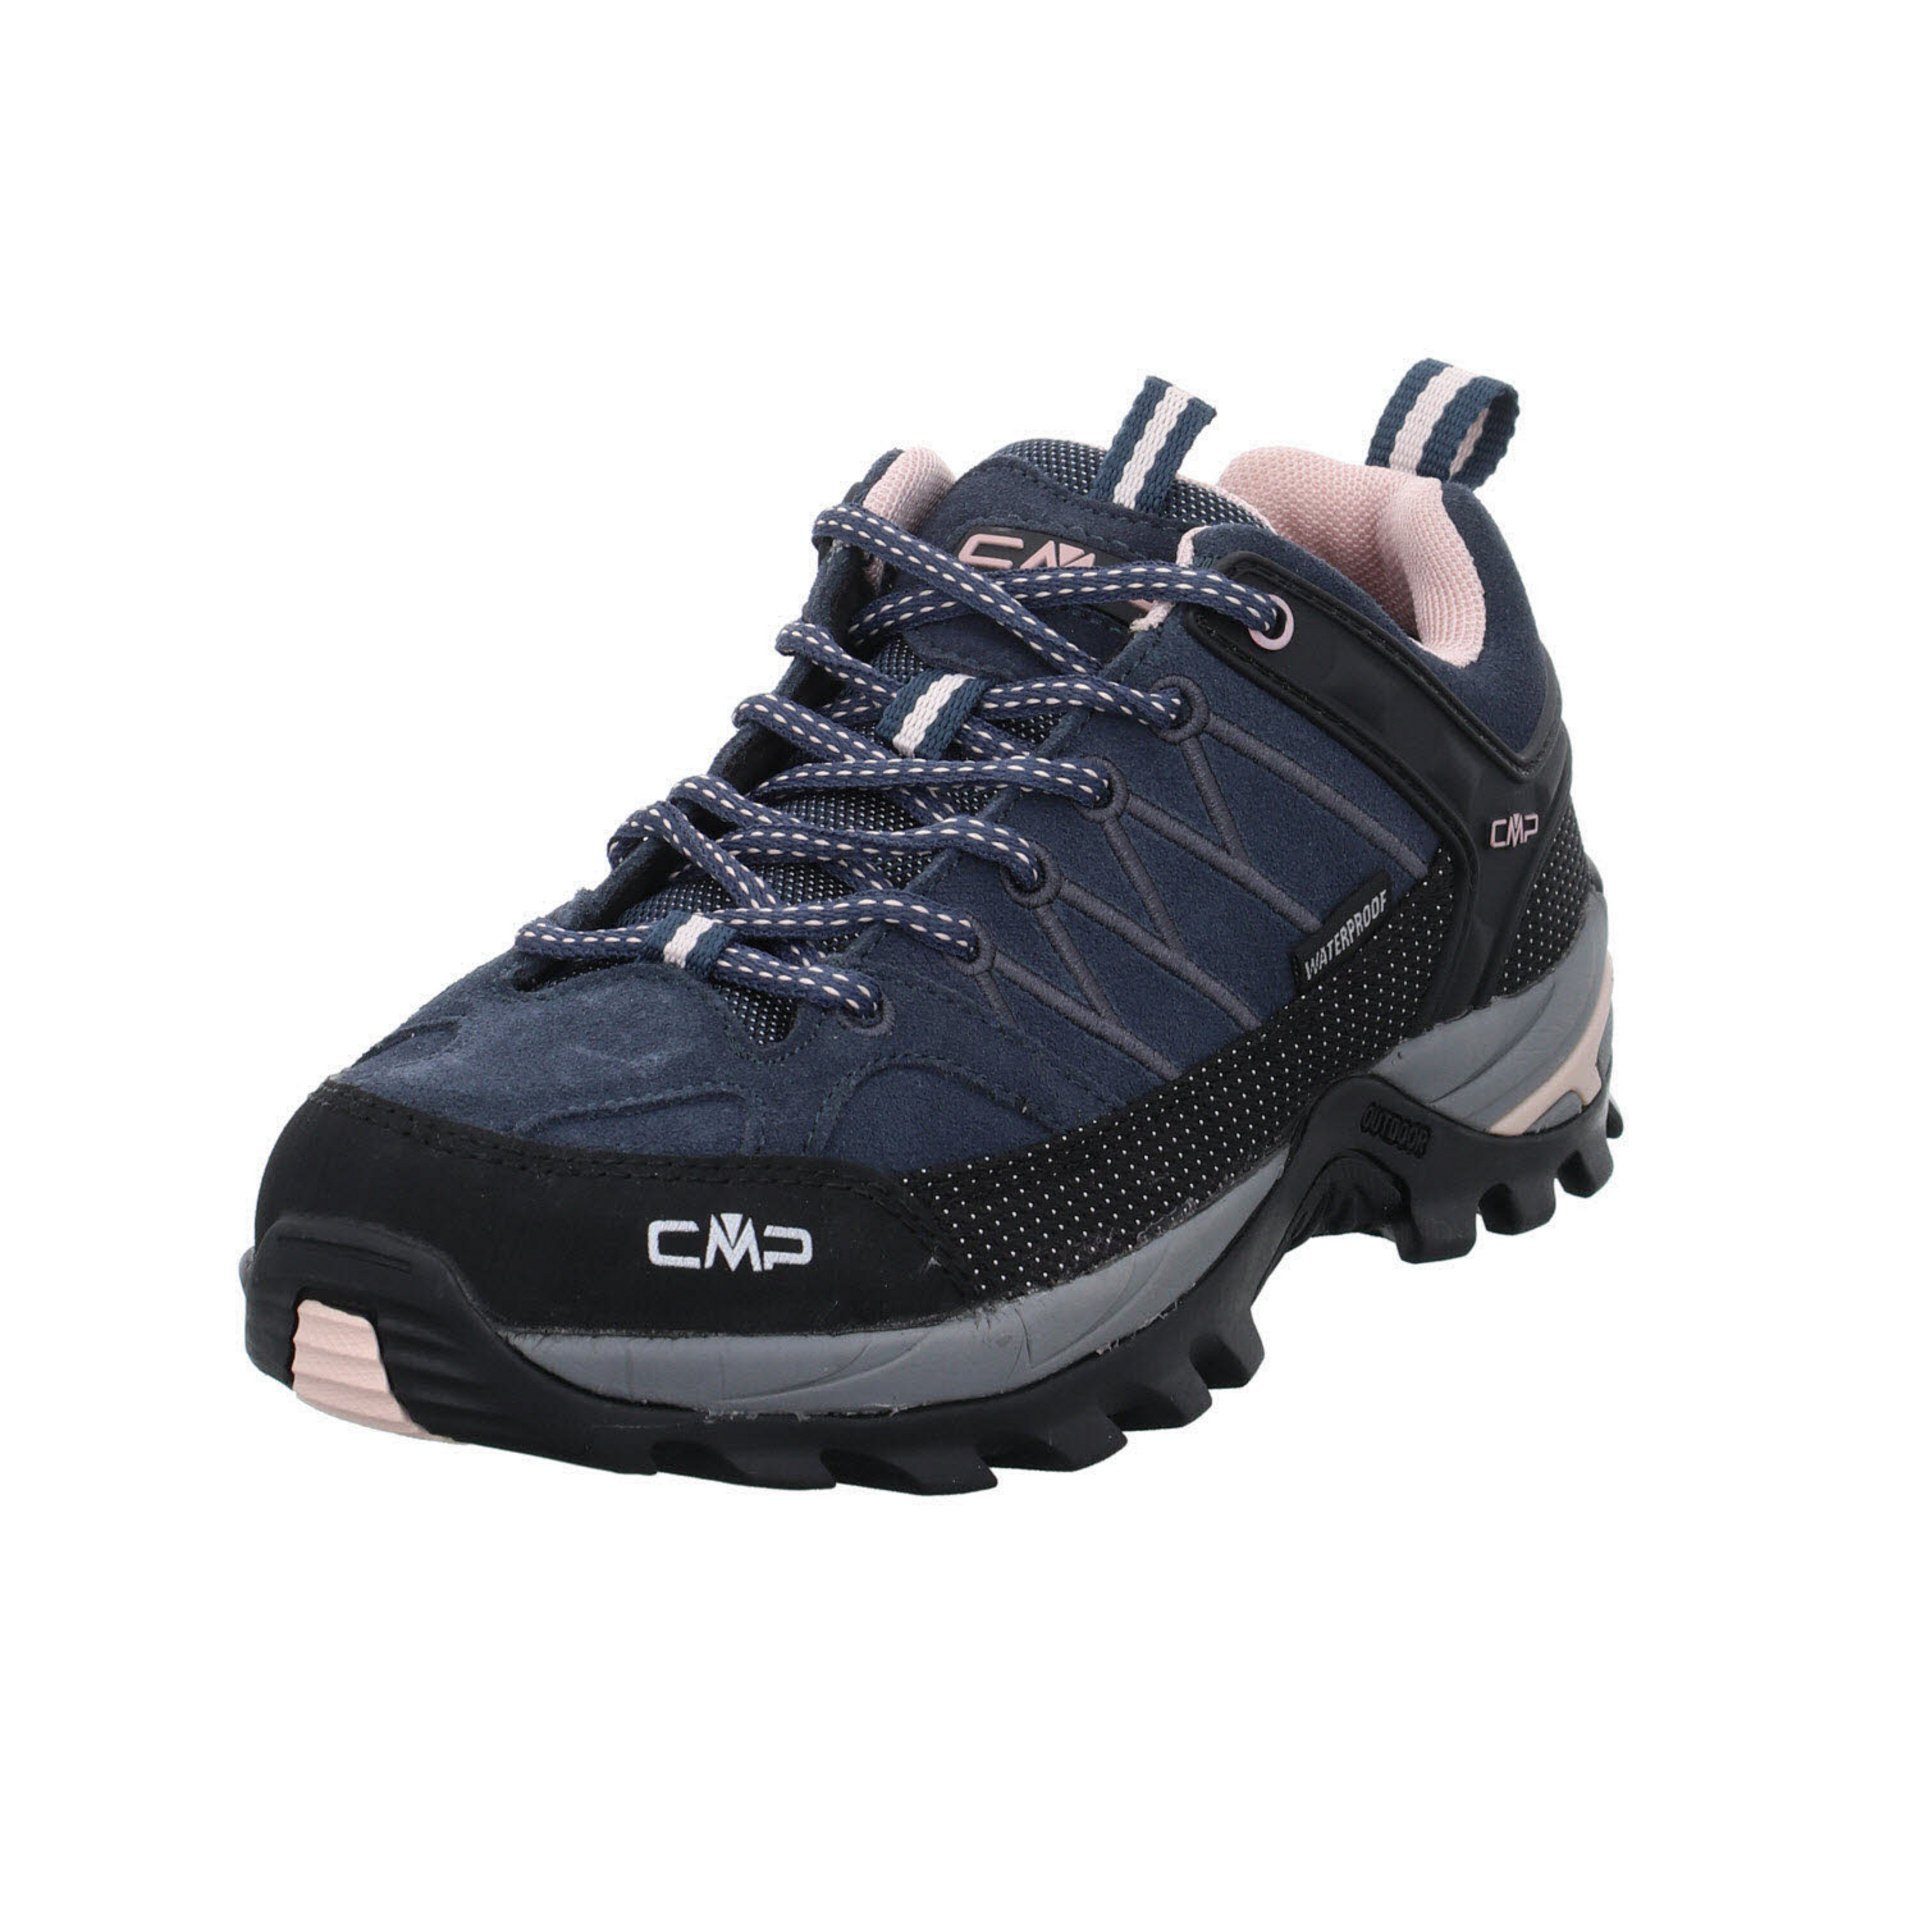 CMP Damen Schuhe Outdoor Riegel Low Outdoorschuh Outdoorschuh Leder-/Textilkombination asphalt-antracite-rose